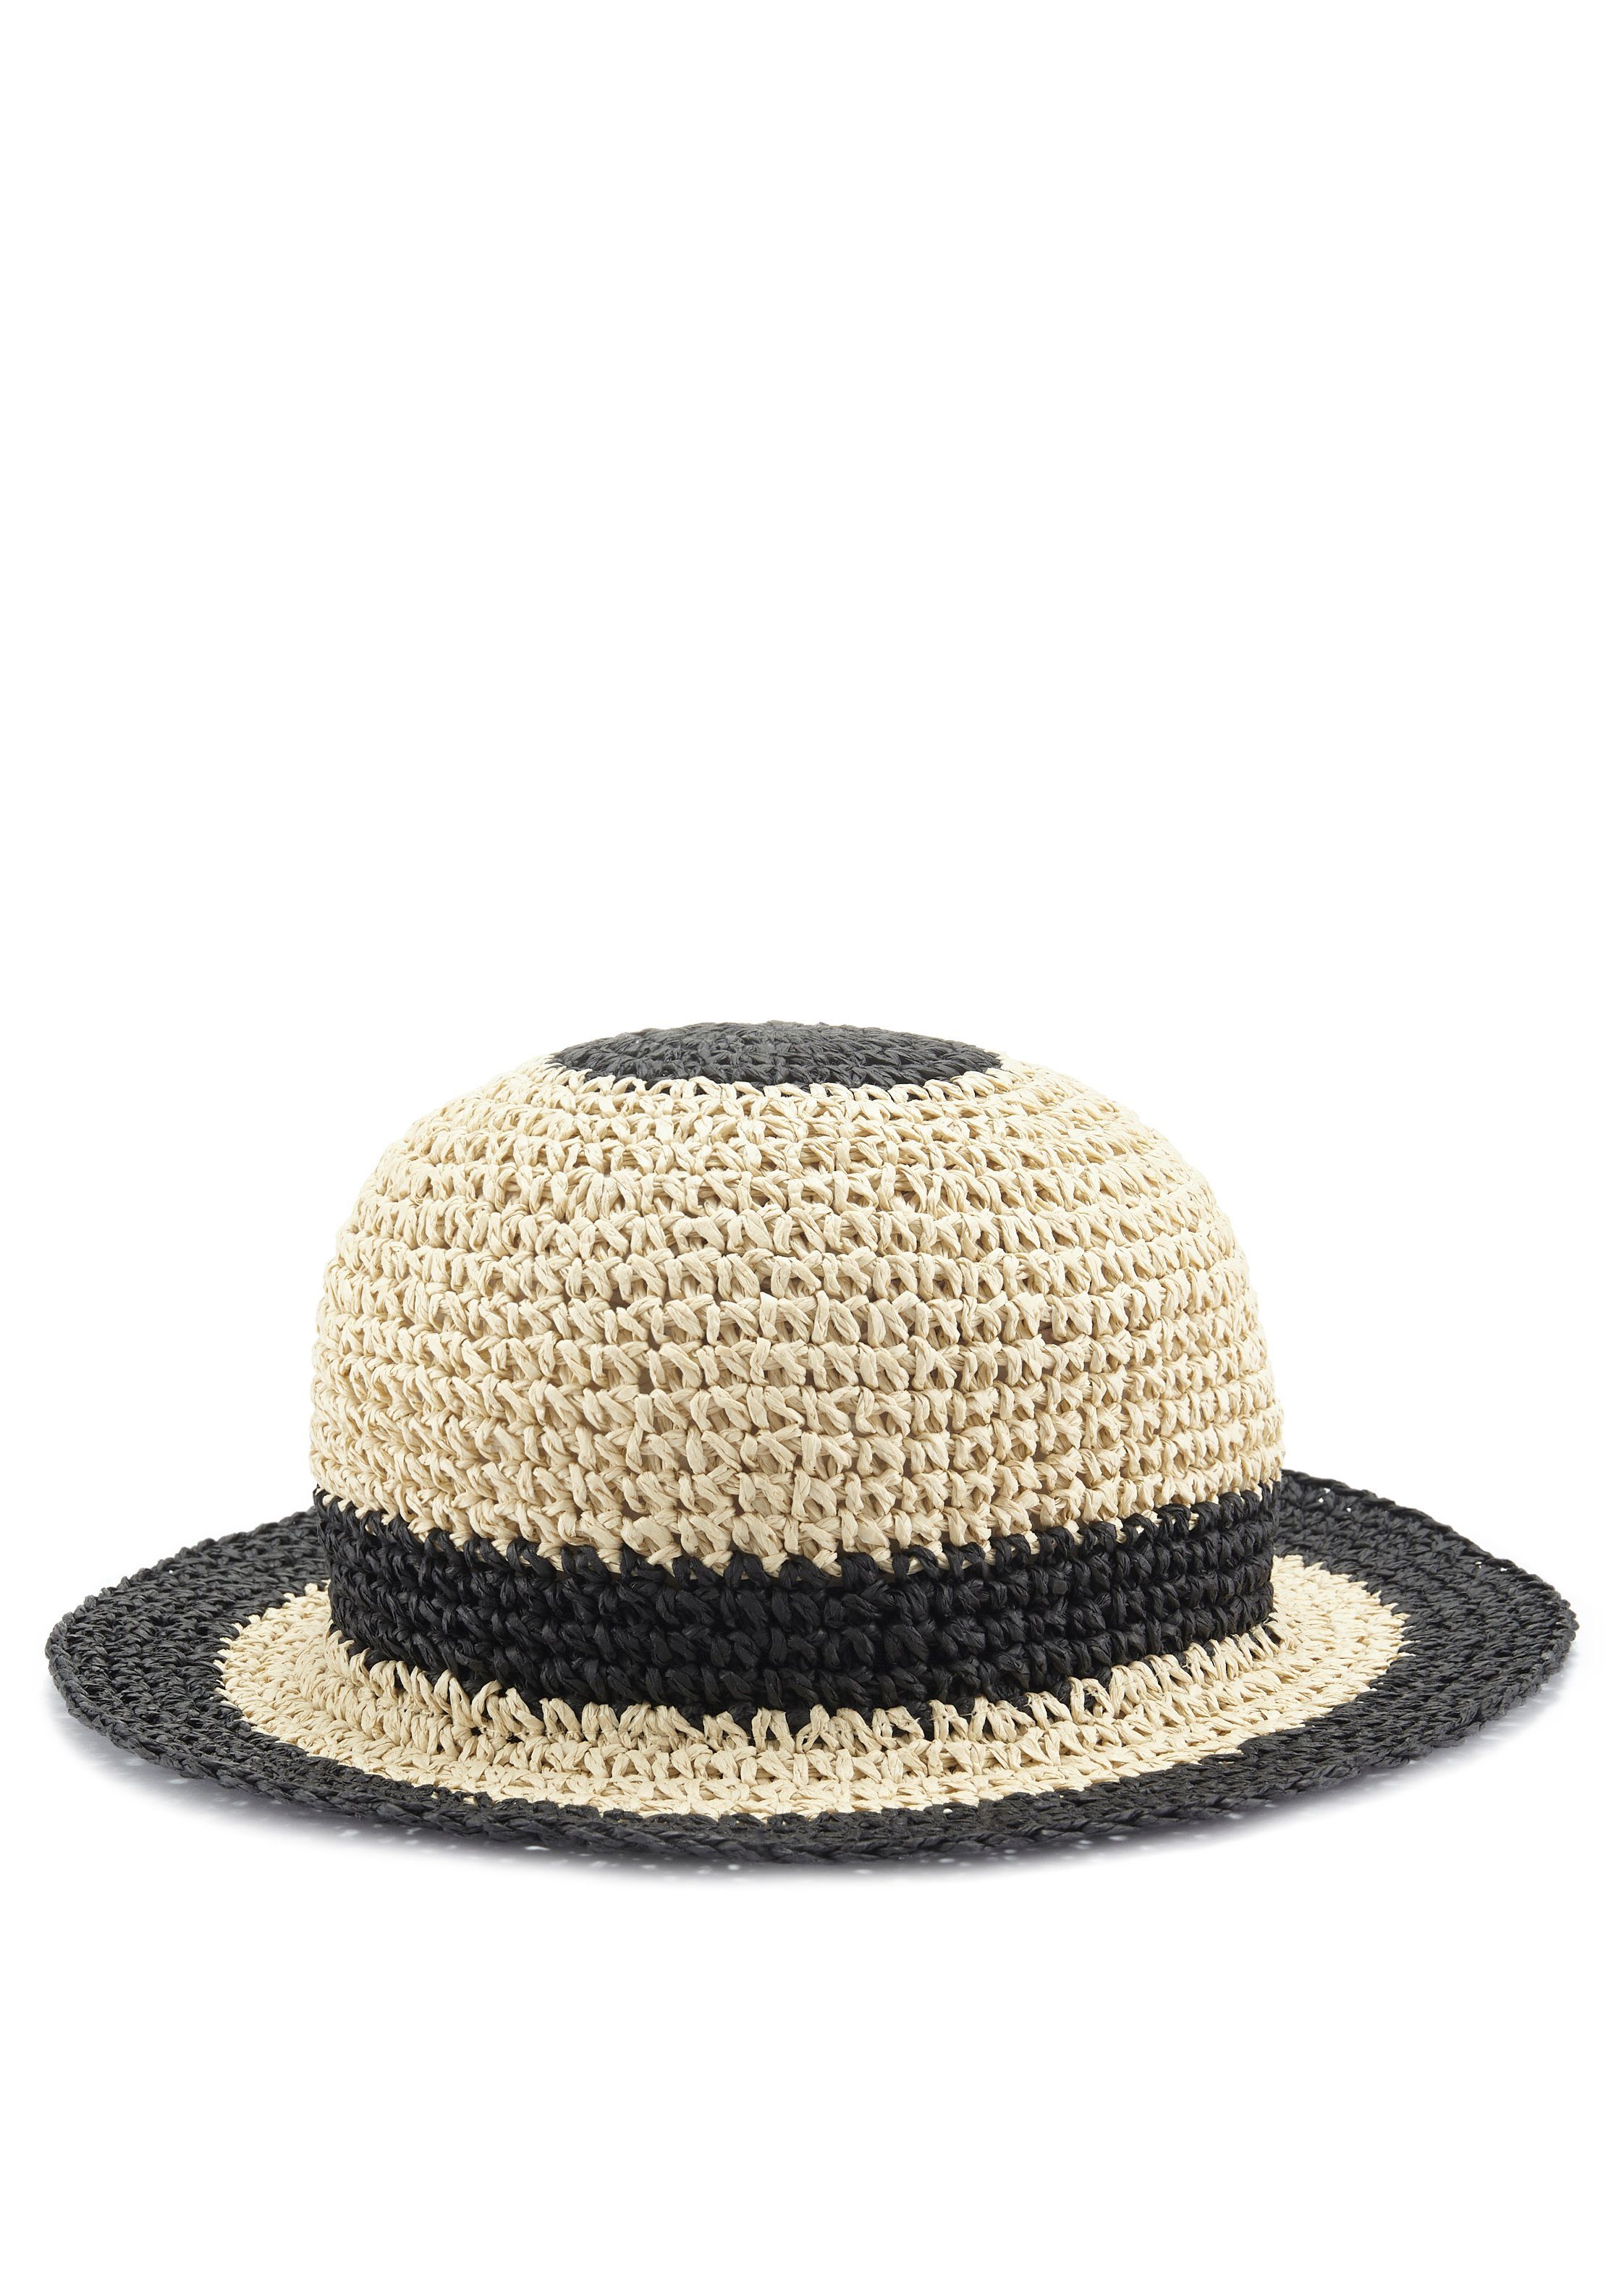 LASCANA Strohhut Bucket Hat aus Stroh, Sommerhut, Kopfbedeckung